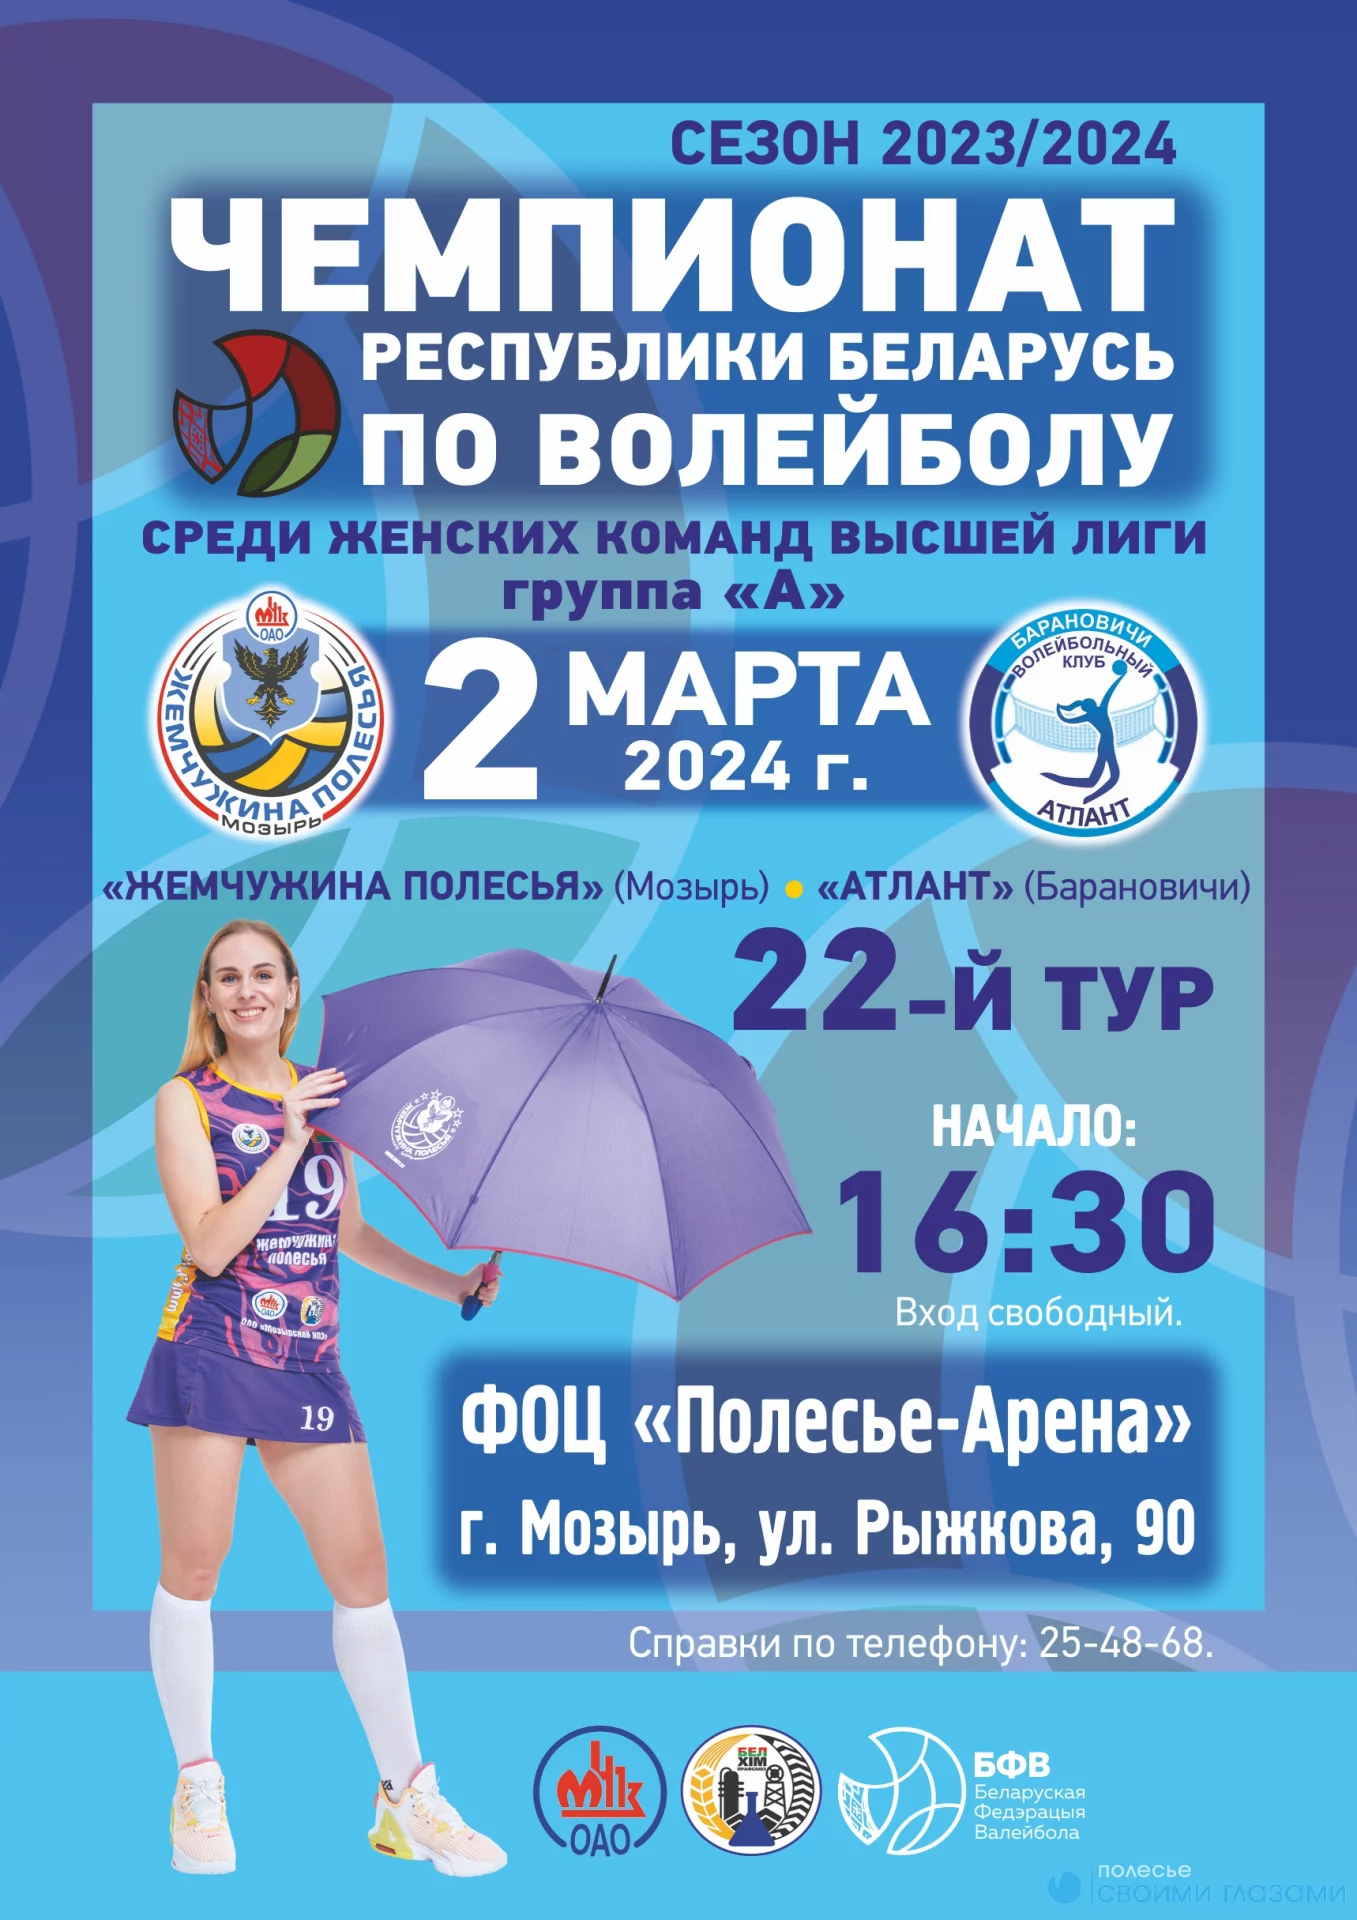 02 марта 2024г. состоится 22-ой тур чемпионата РБ по волейболу